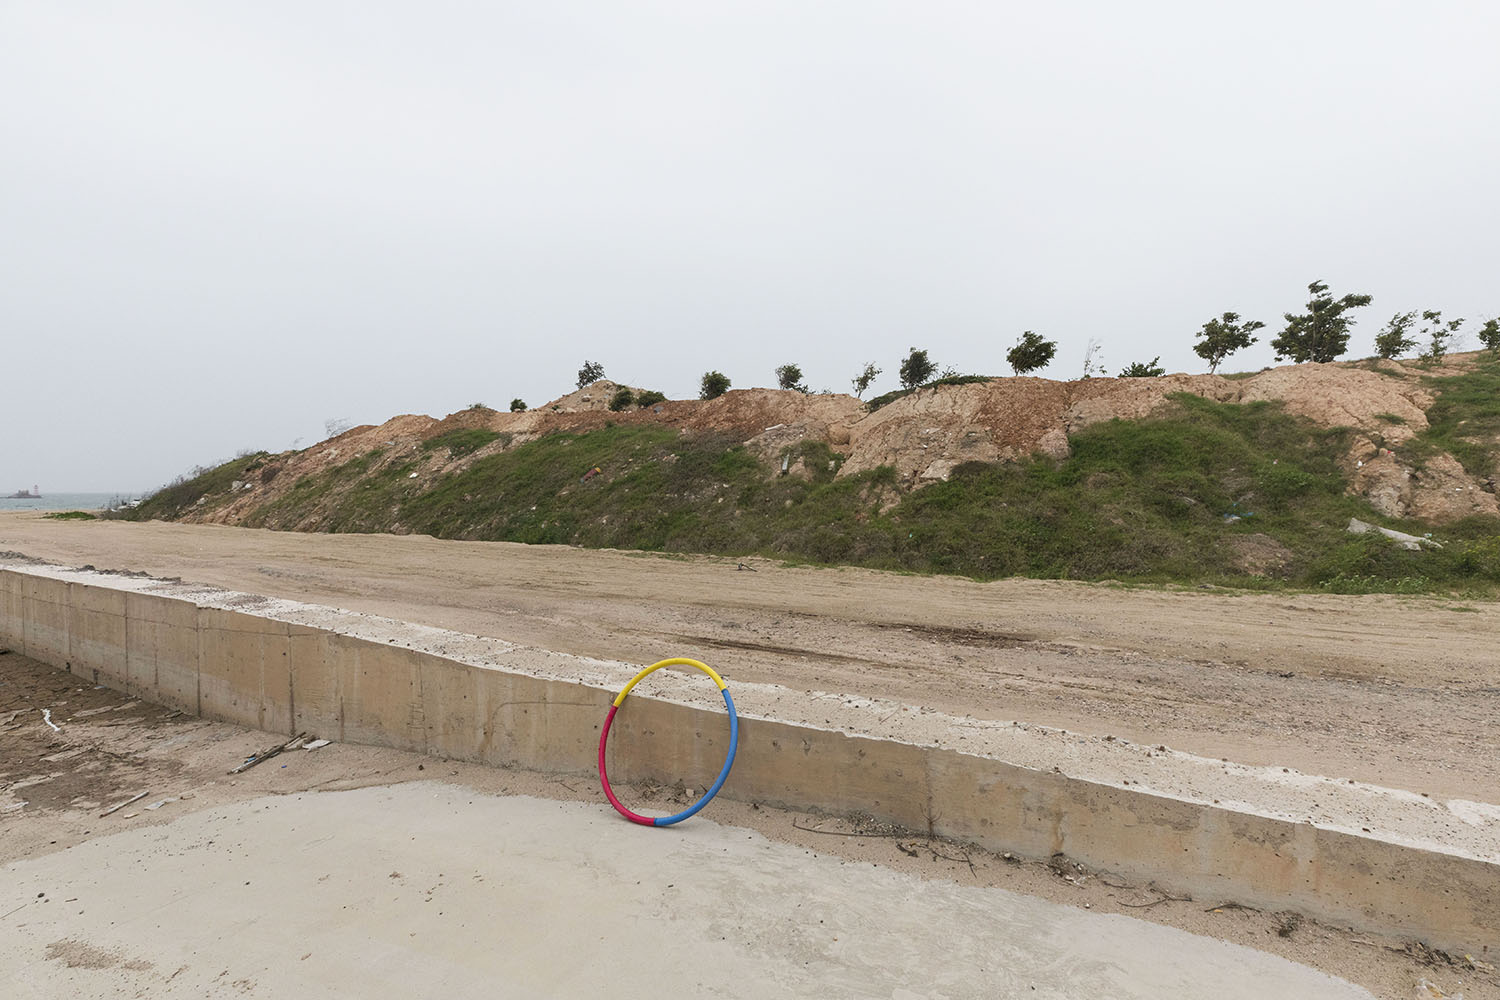 A hoola-hoop at Guanyinshan Fantasy Beach. Xiamen, China. 2018.